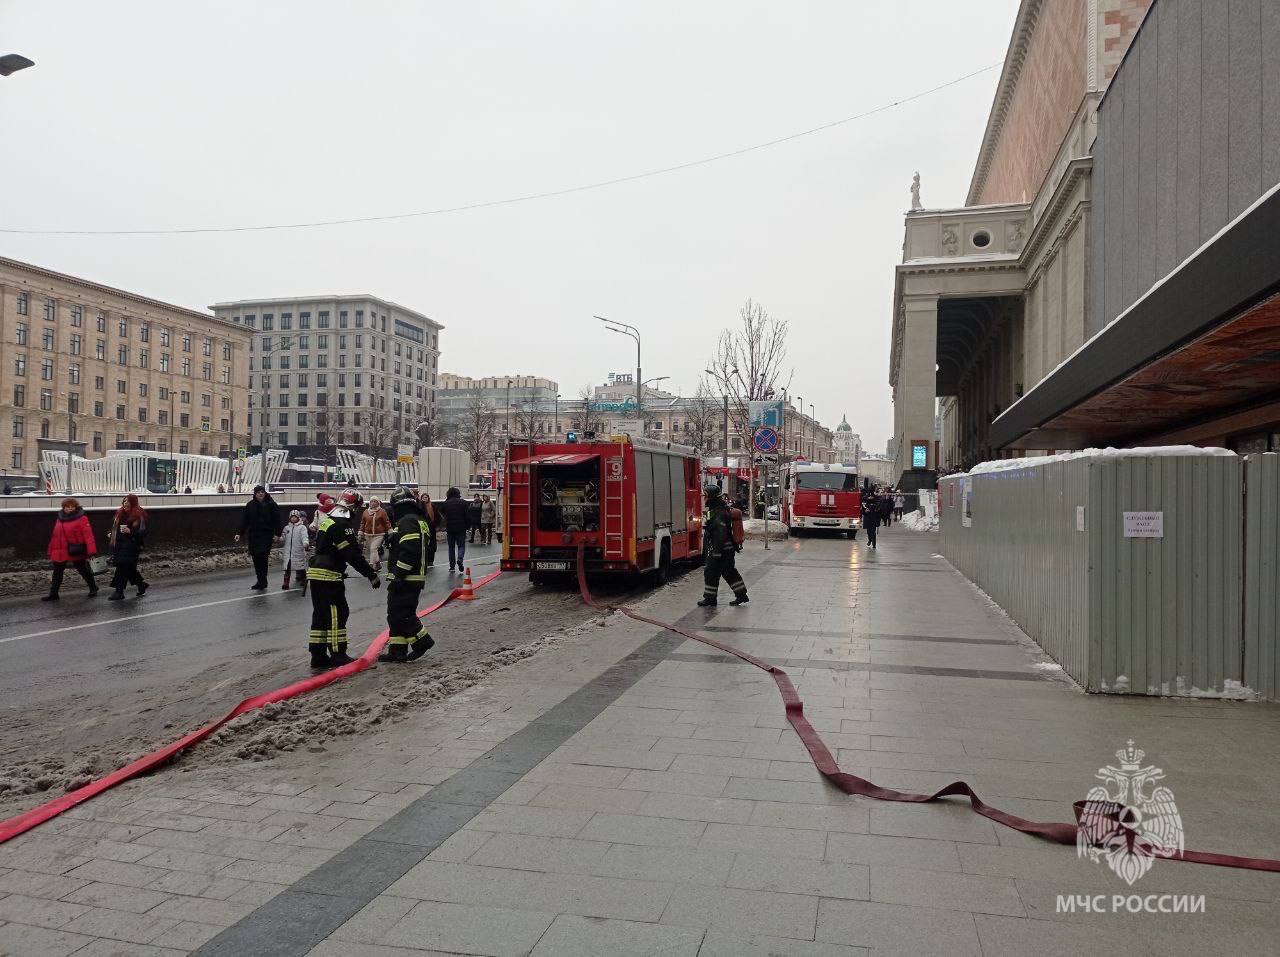 МЧС опубликовало видео с места тушения пожара в Театре Сатиры 